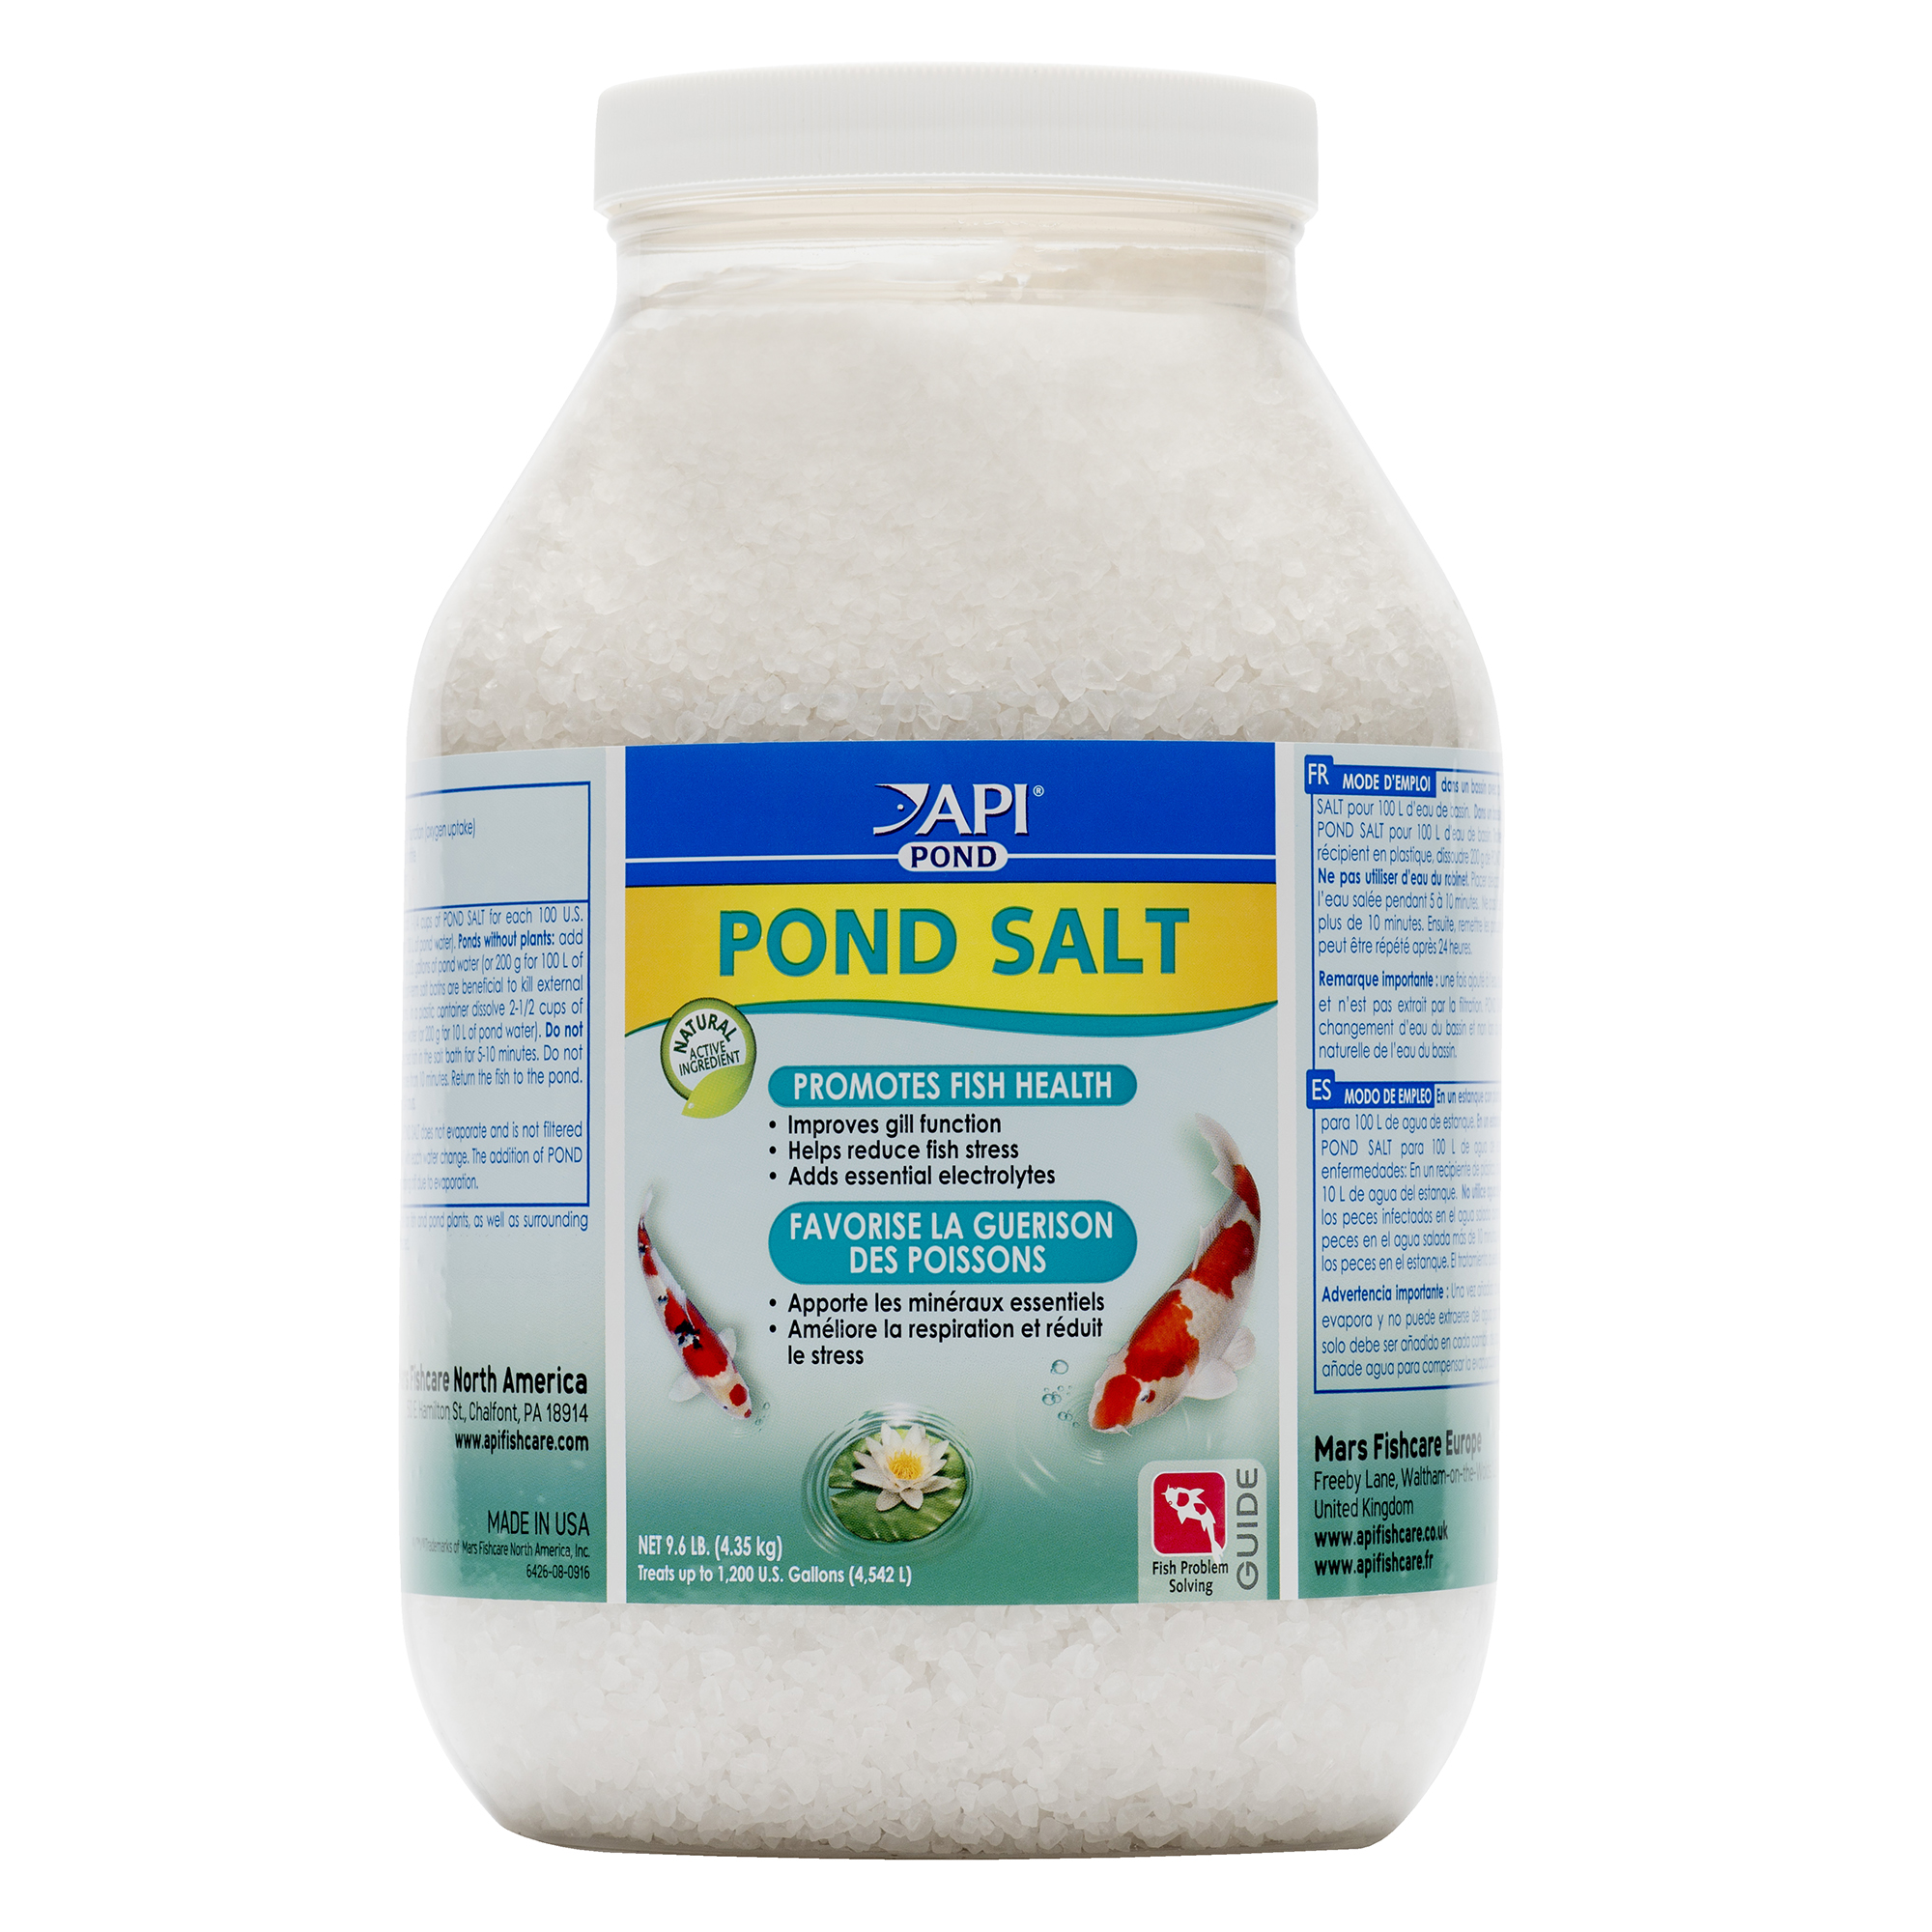 POND SALT